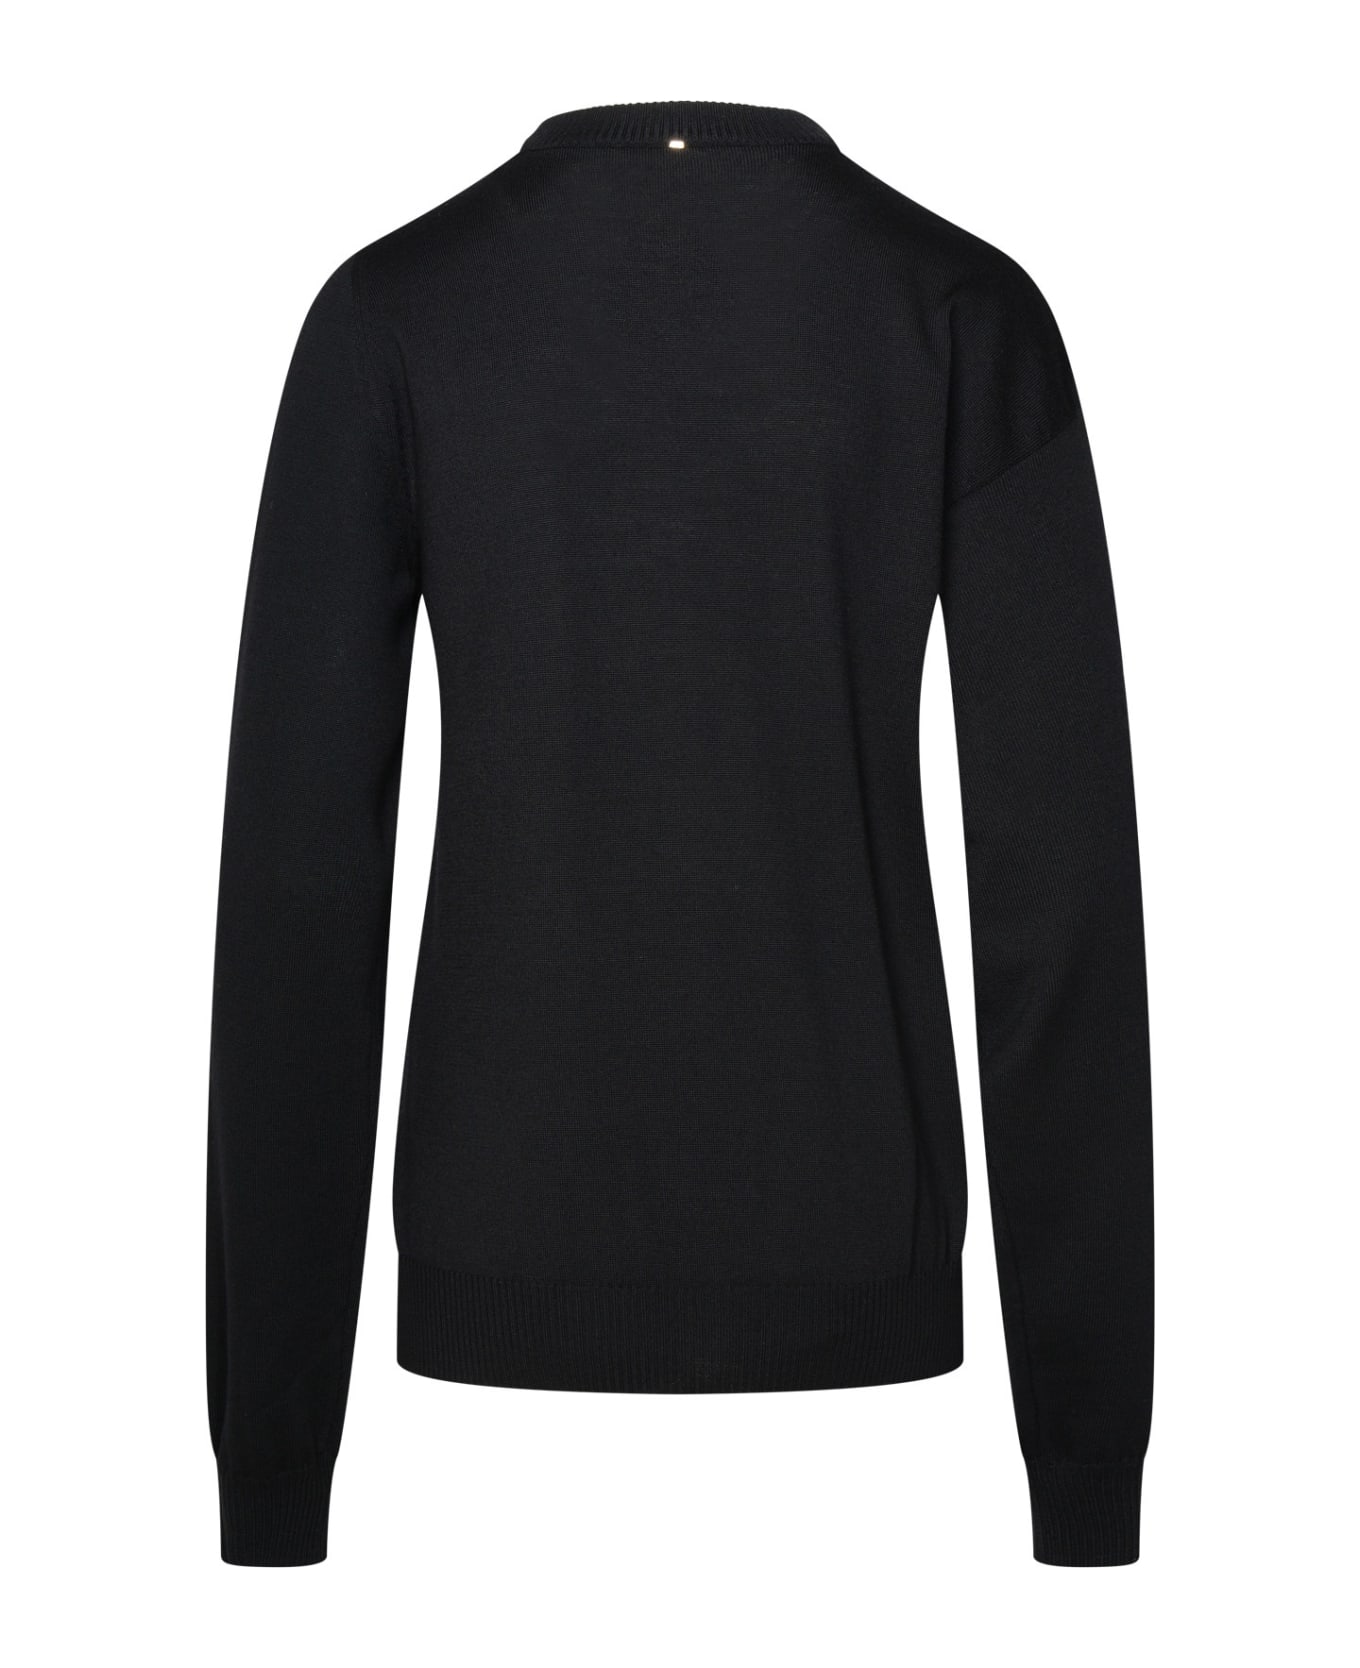 SportMax Black Virgin Wool Sweater - Black ニットウェア